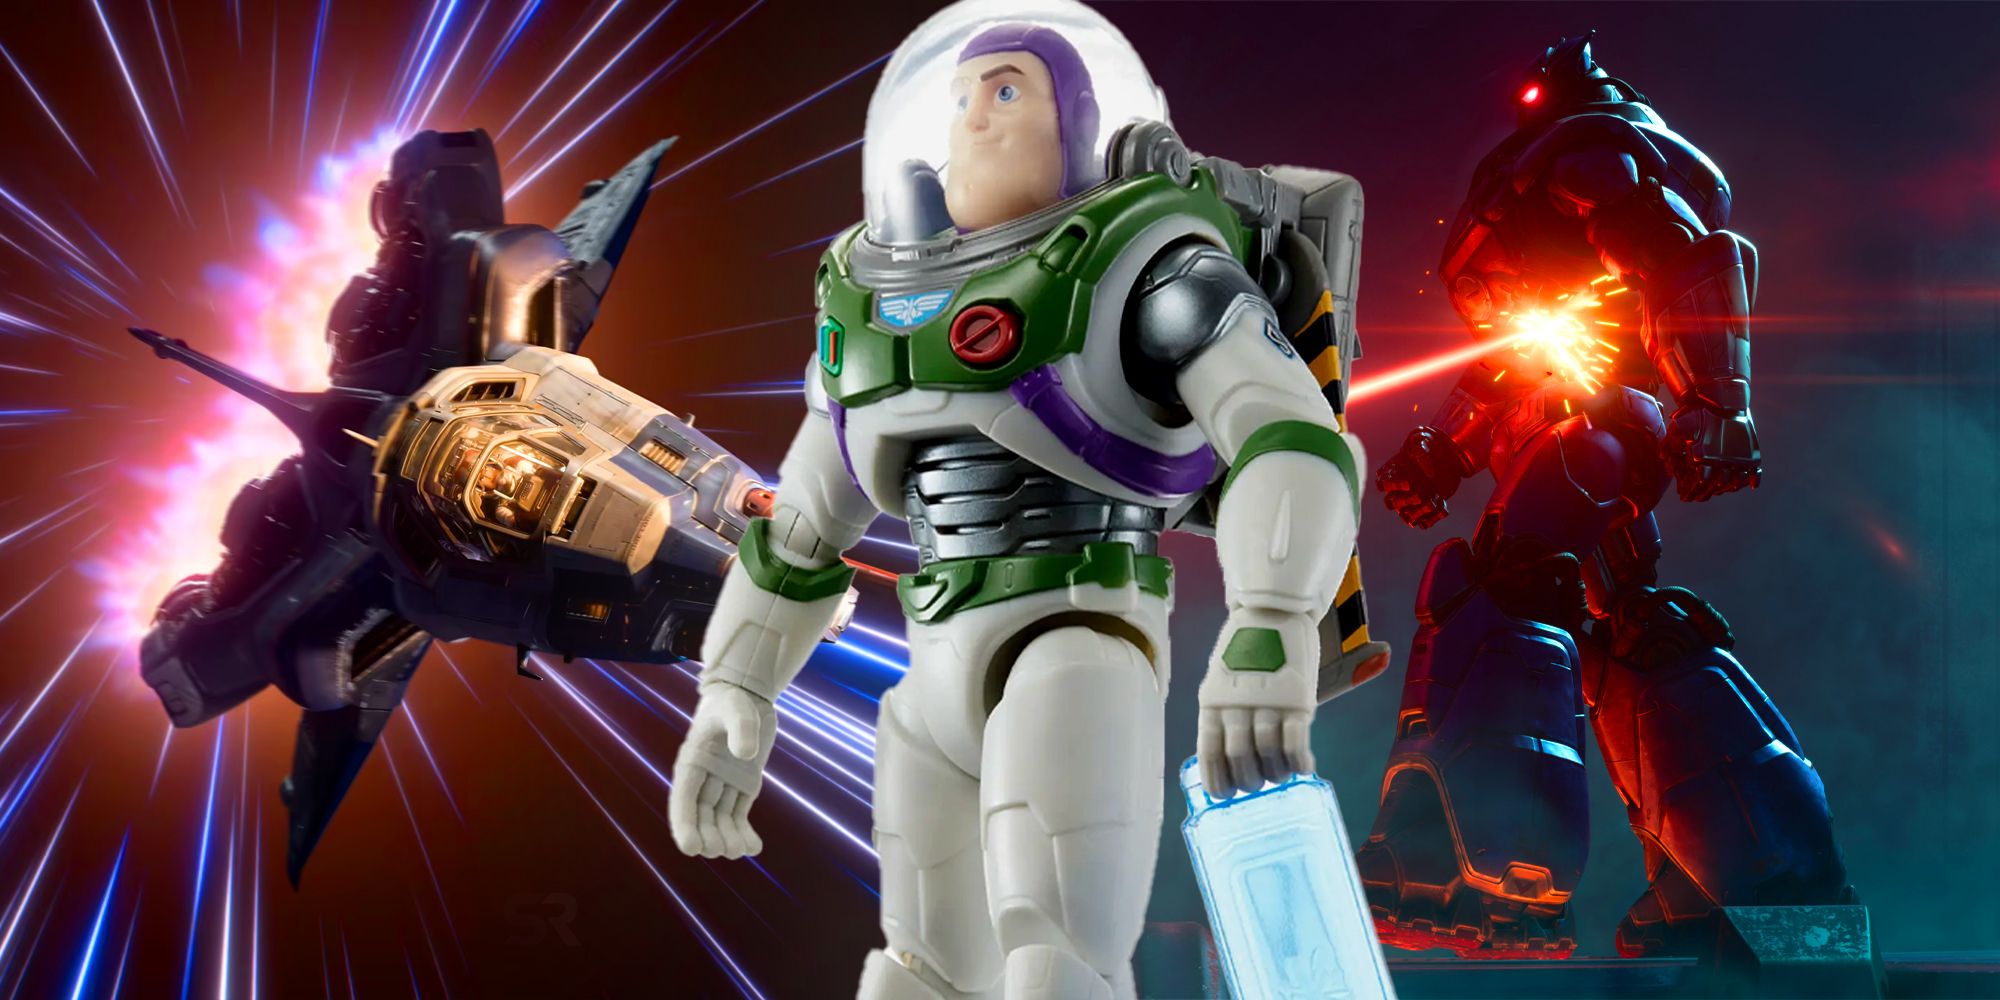 Buzz Lightyear Zurg Bots Spaceships Toys